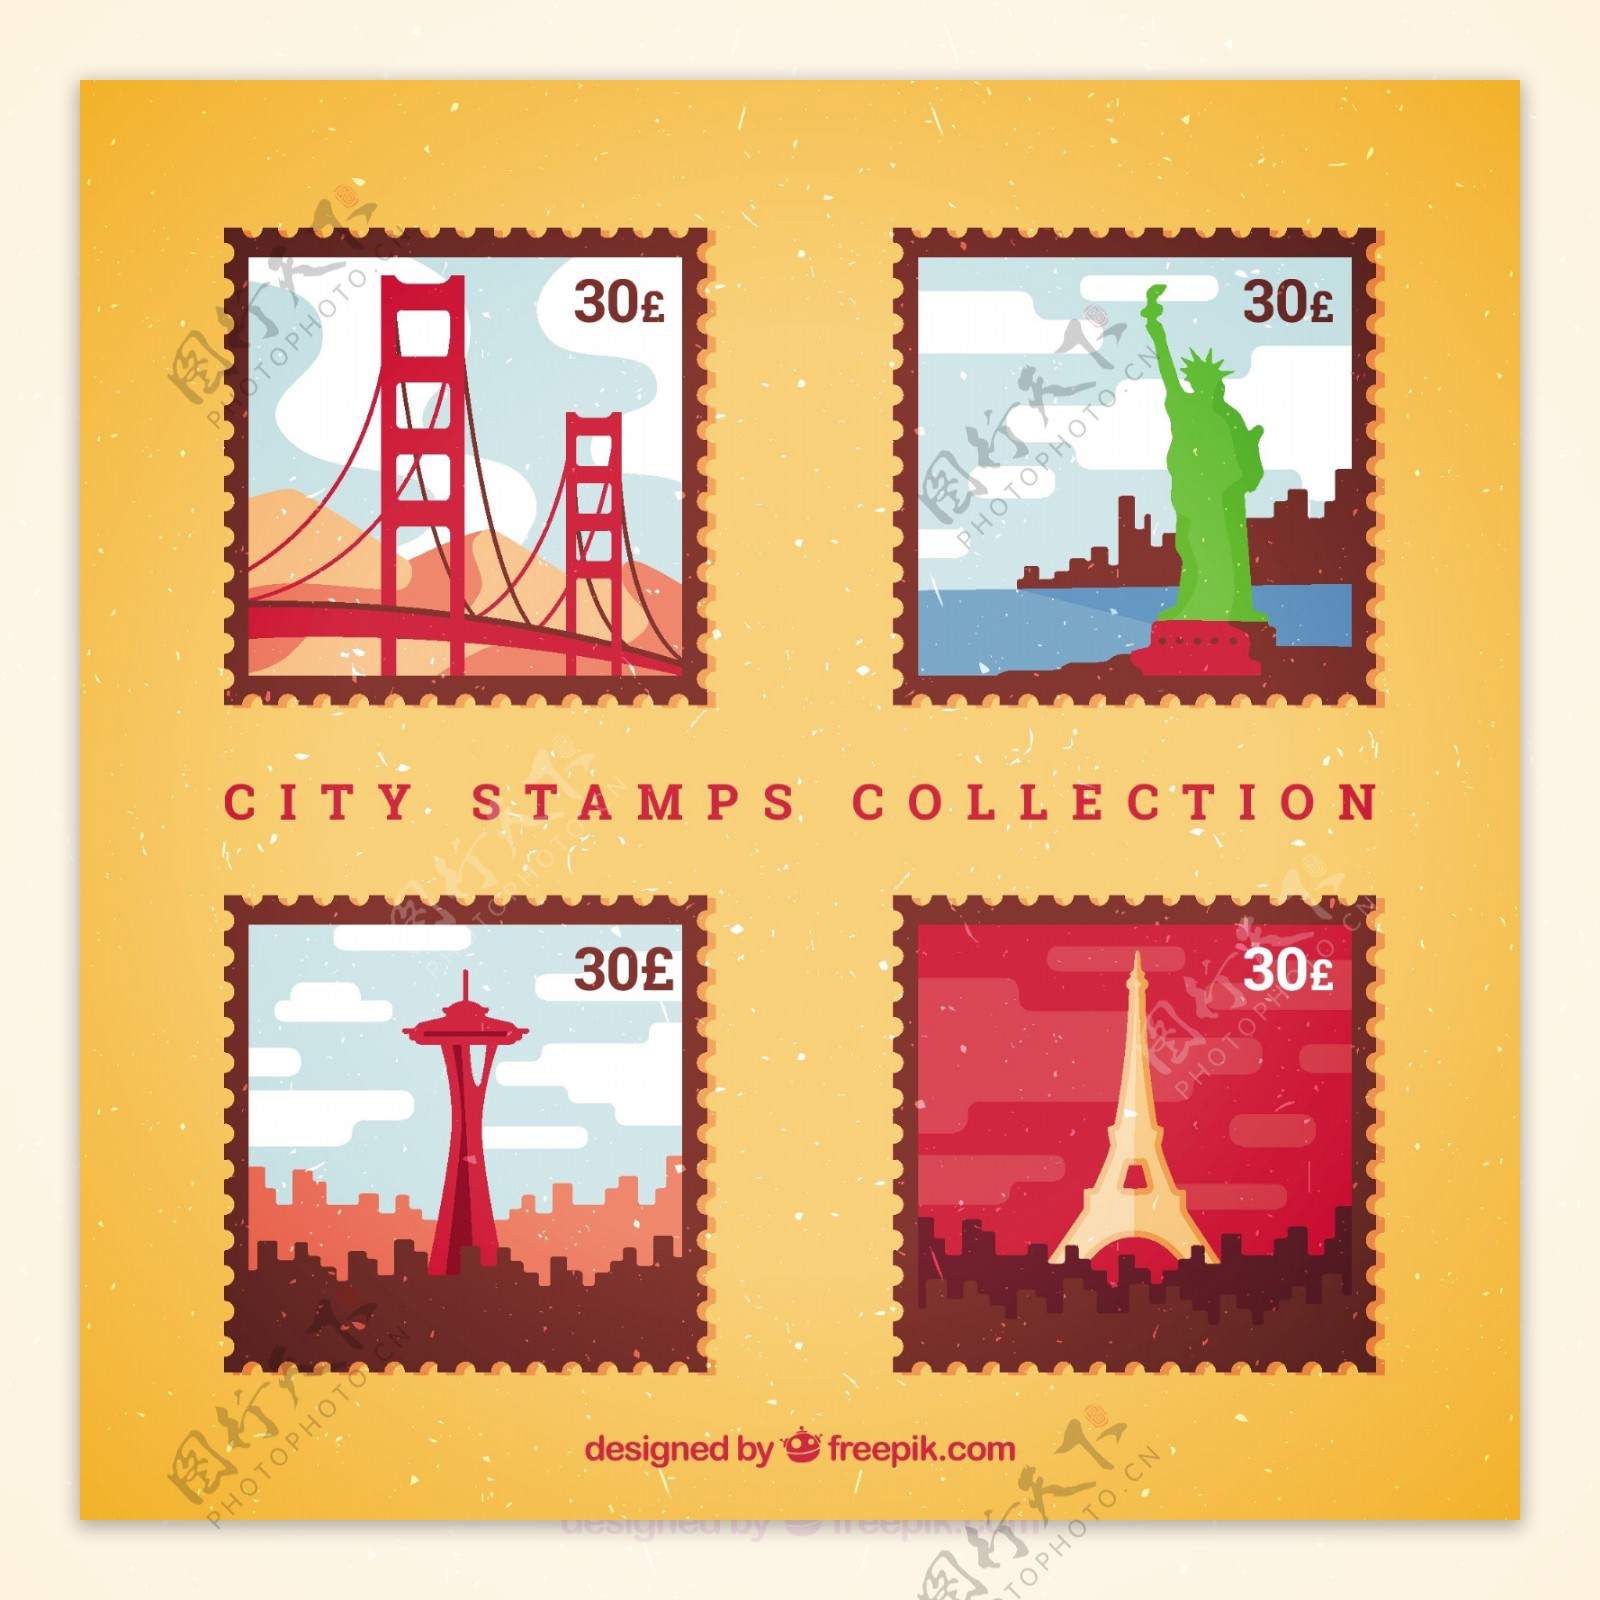 四个彩色不同的城市邮票